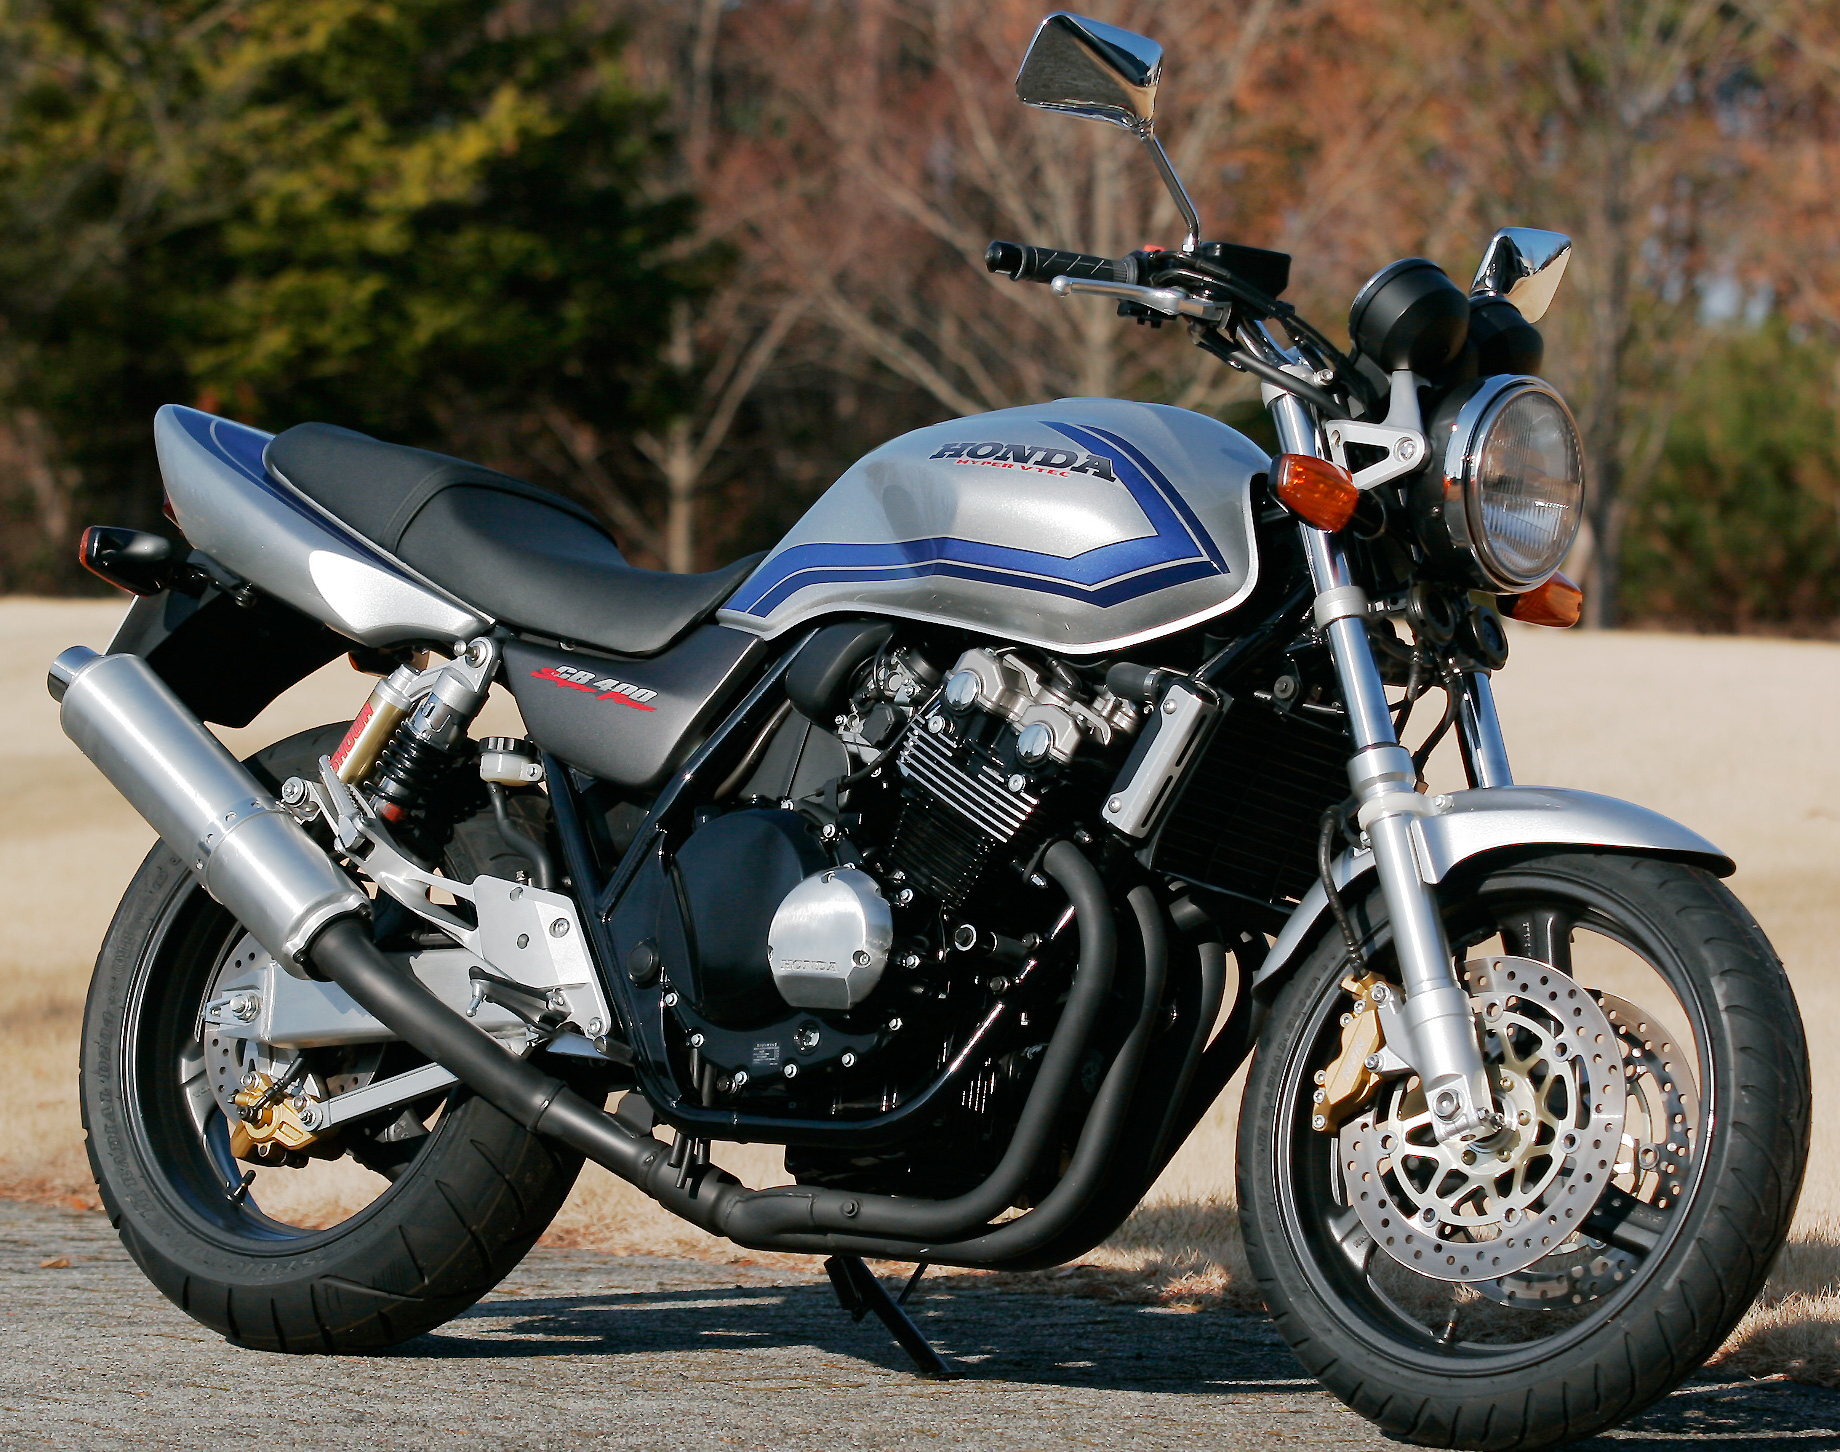 Мотоцикл honda cb 400 – один из лучших представителей своего класса | ⚡chtocar